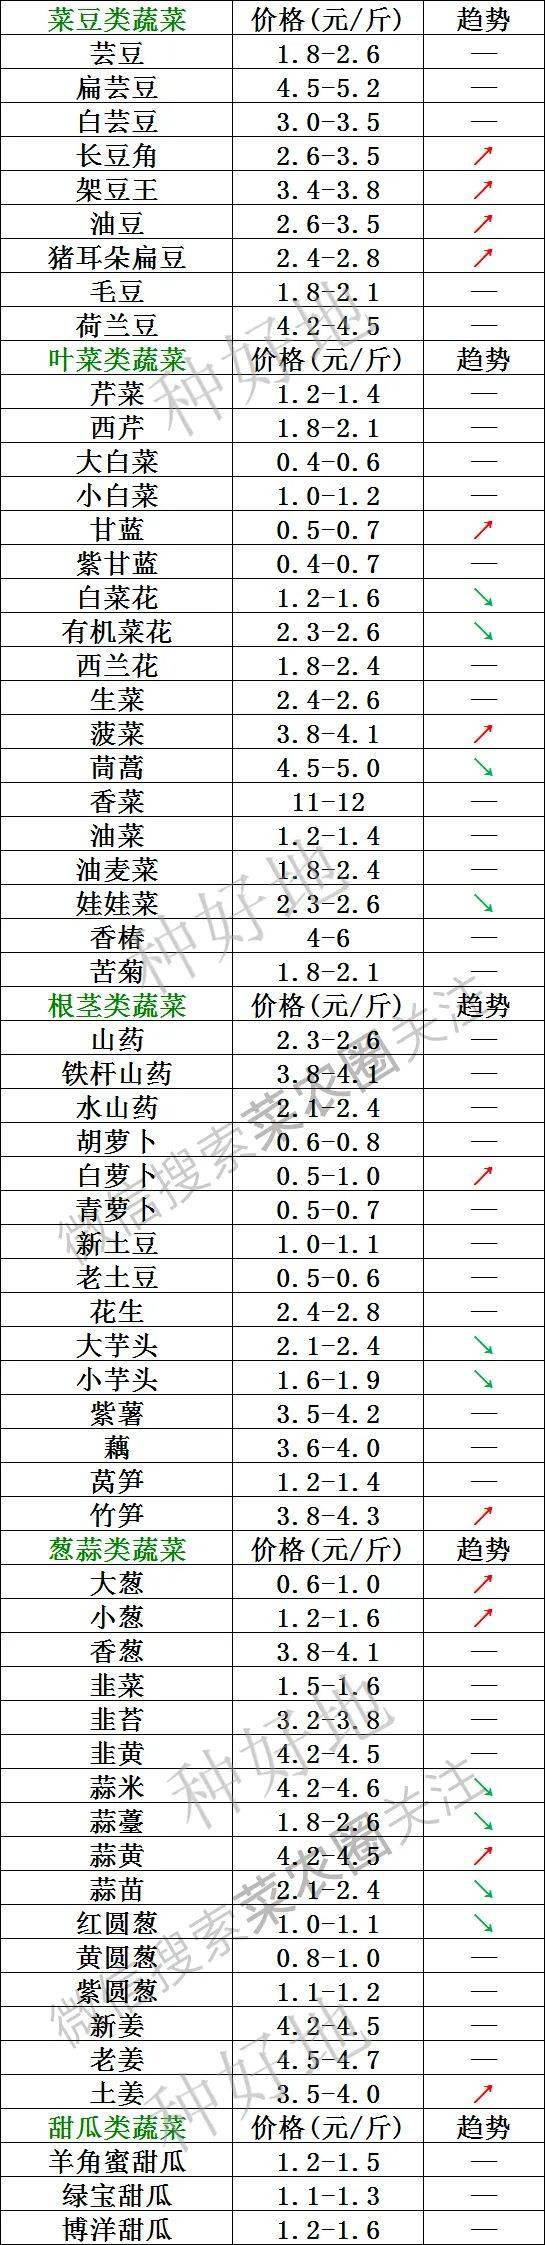 2021年7月25日北京新发地,山东寿光,云南,河北石家庄今日蔬菜价格行情一览表